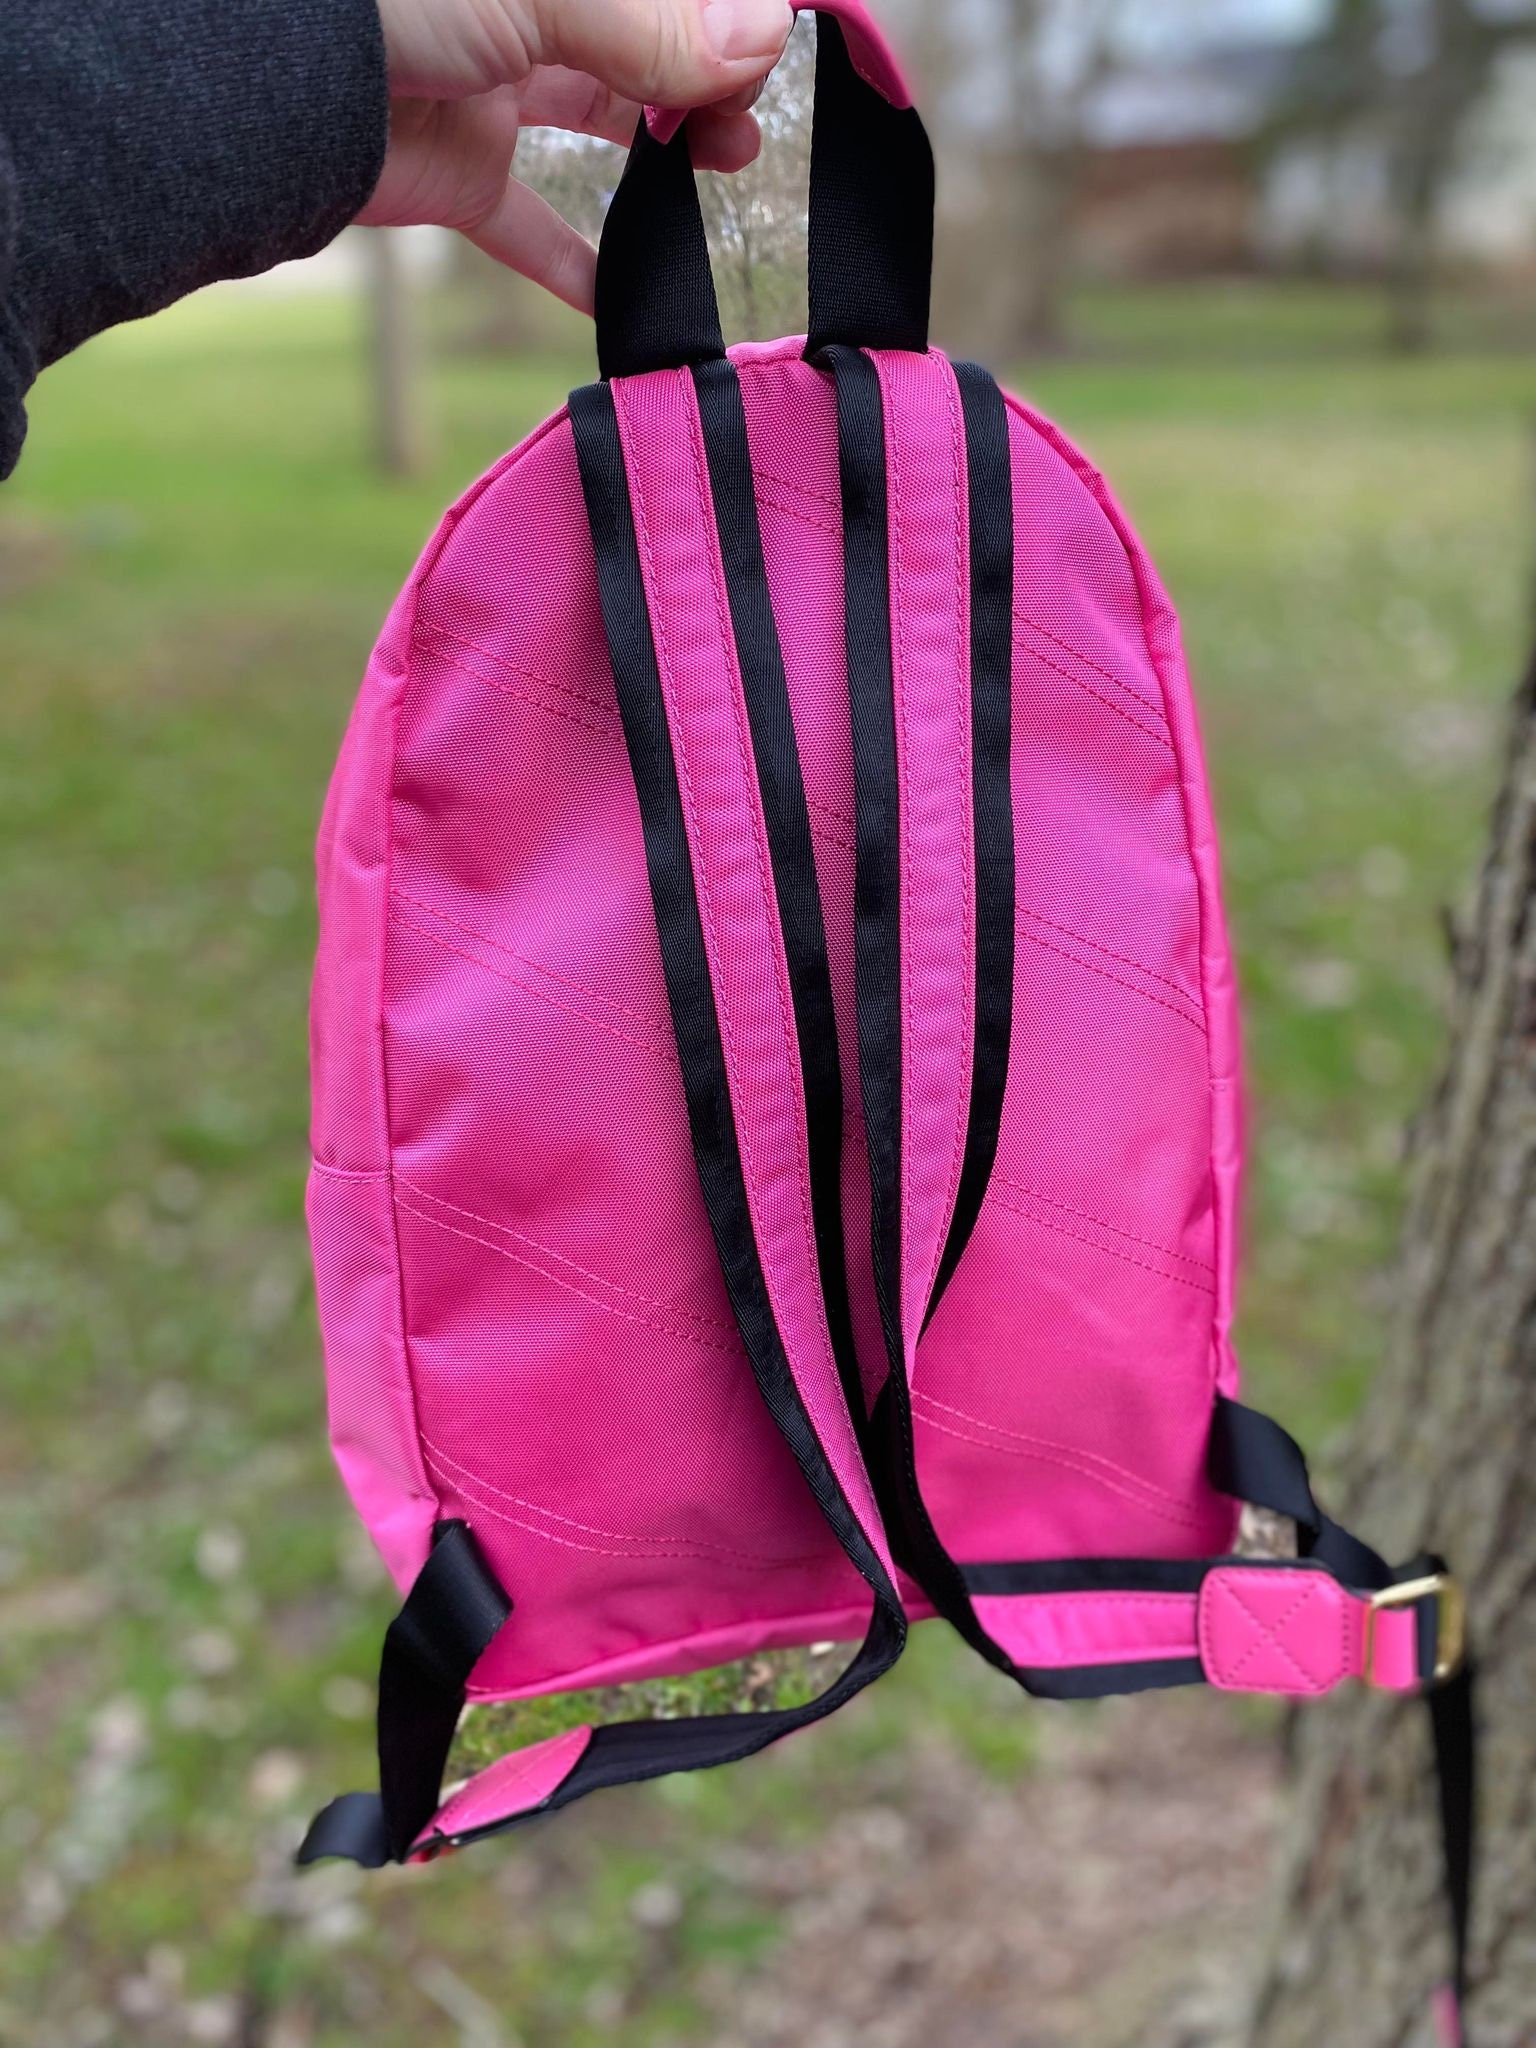 Marc Jacobs Pink Trek Pack Mini Backpack Nylon Travel Bag 